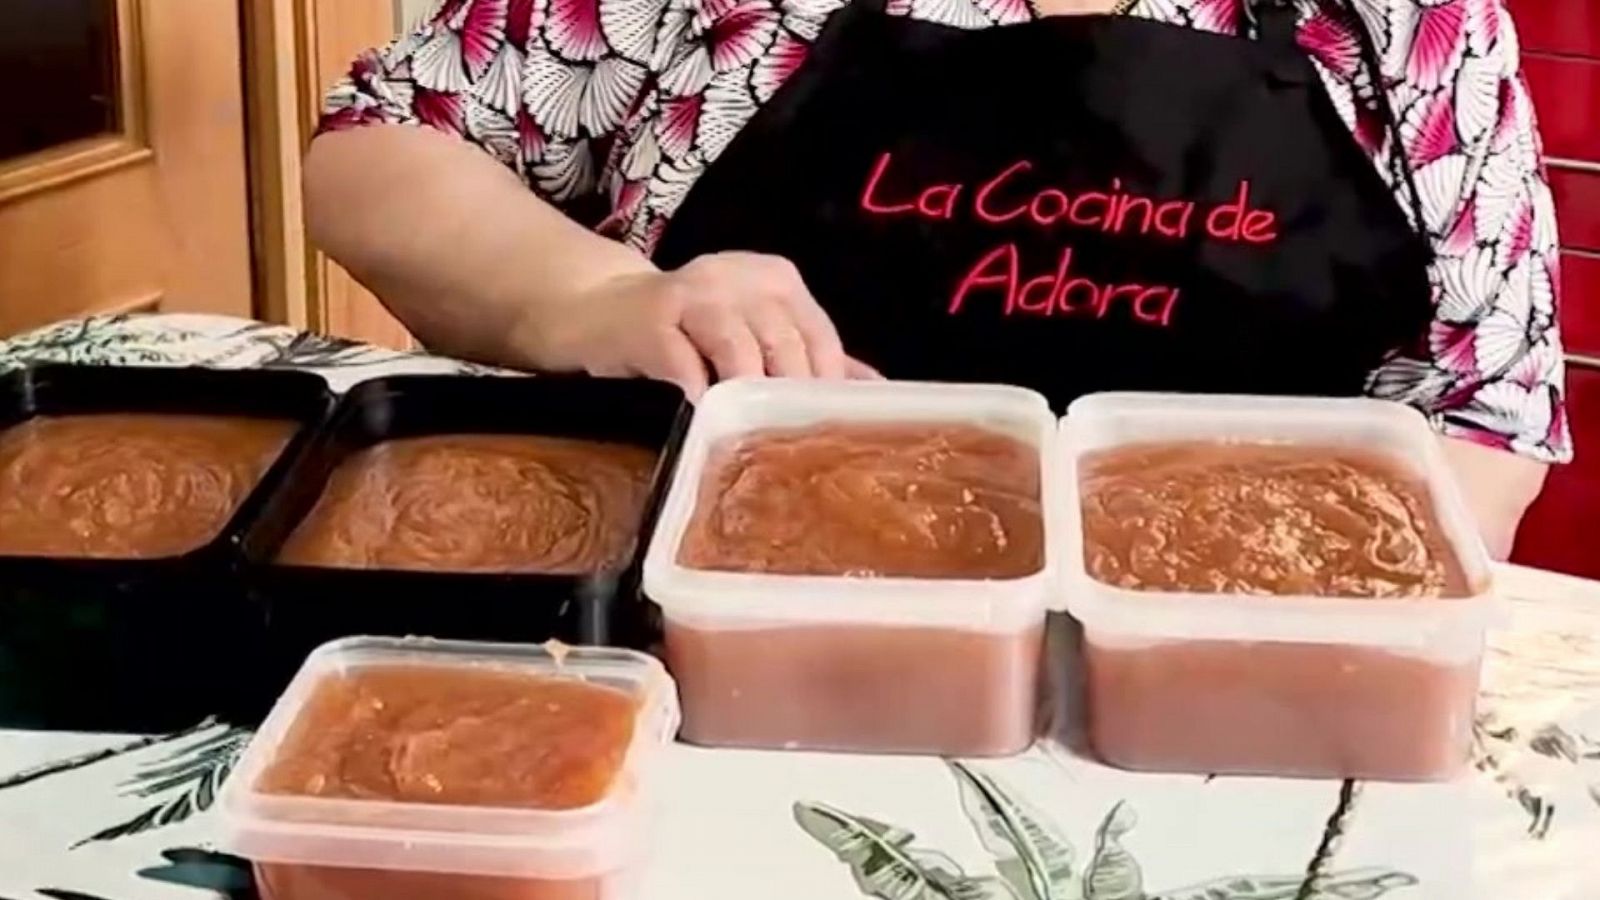 La cocina de Adora: receta para hacer una suculenta y sabrosa carne de membrillo en unos minutos - Ver ahora